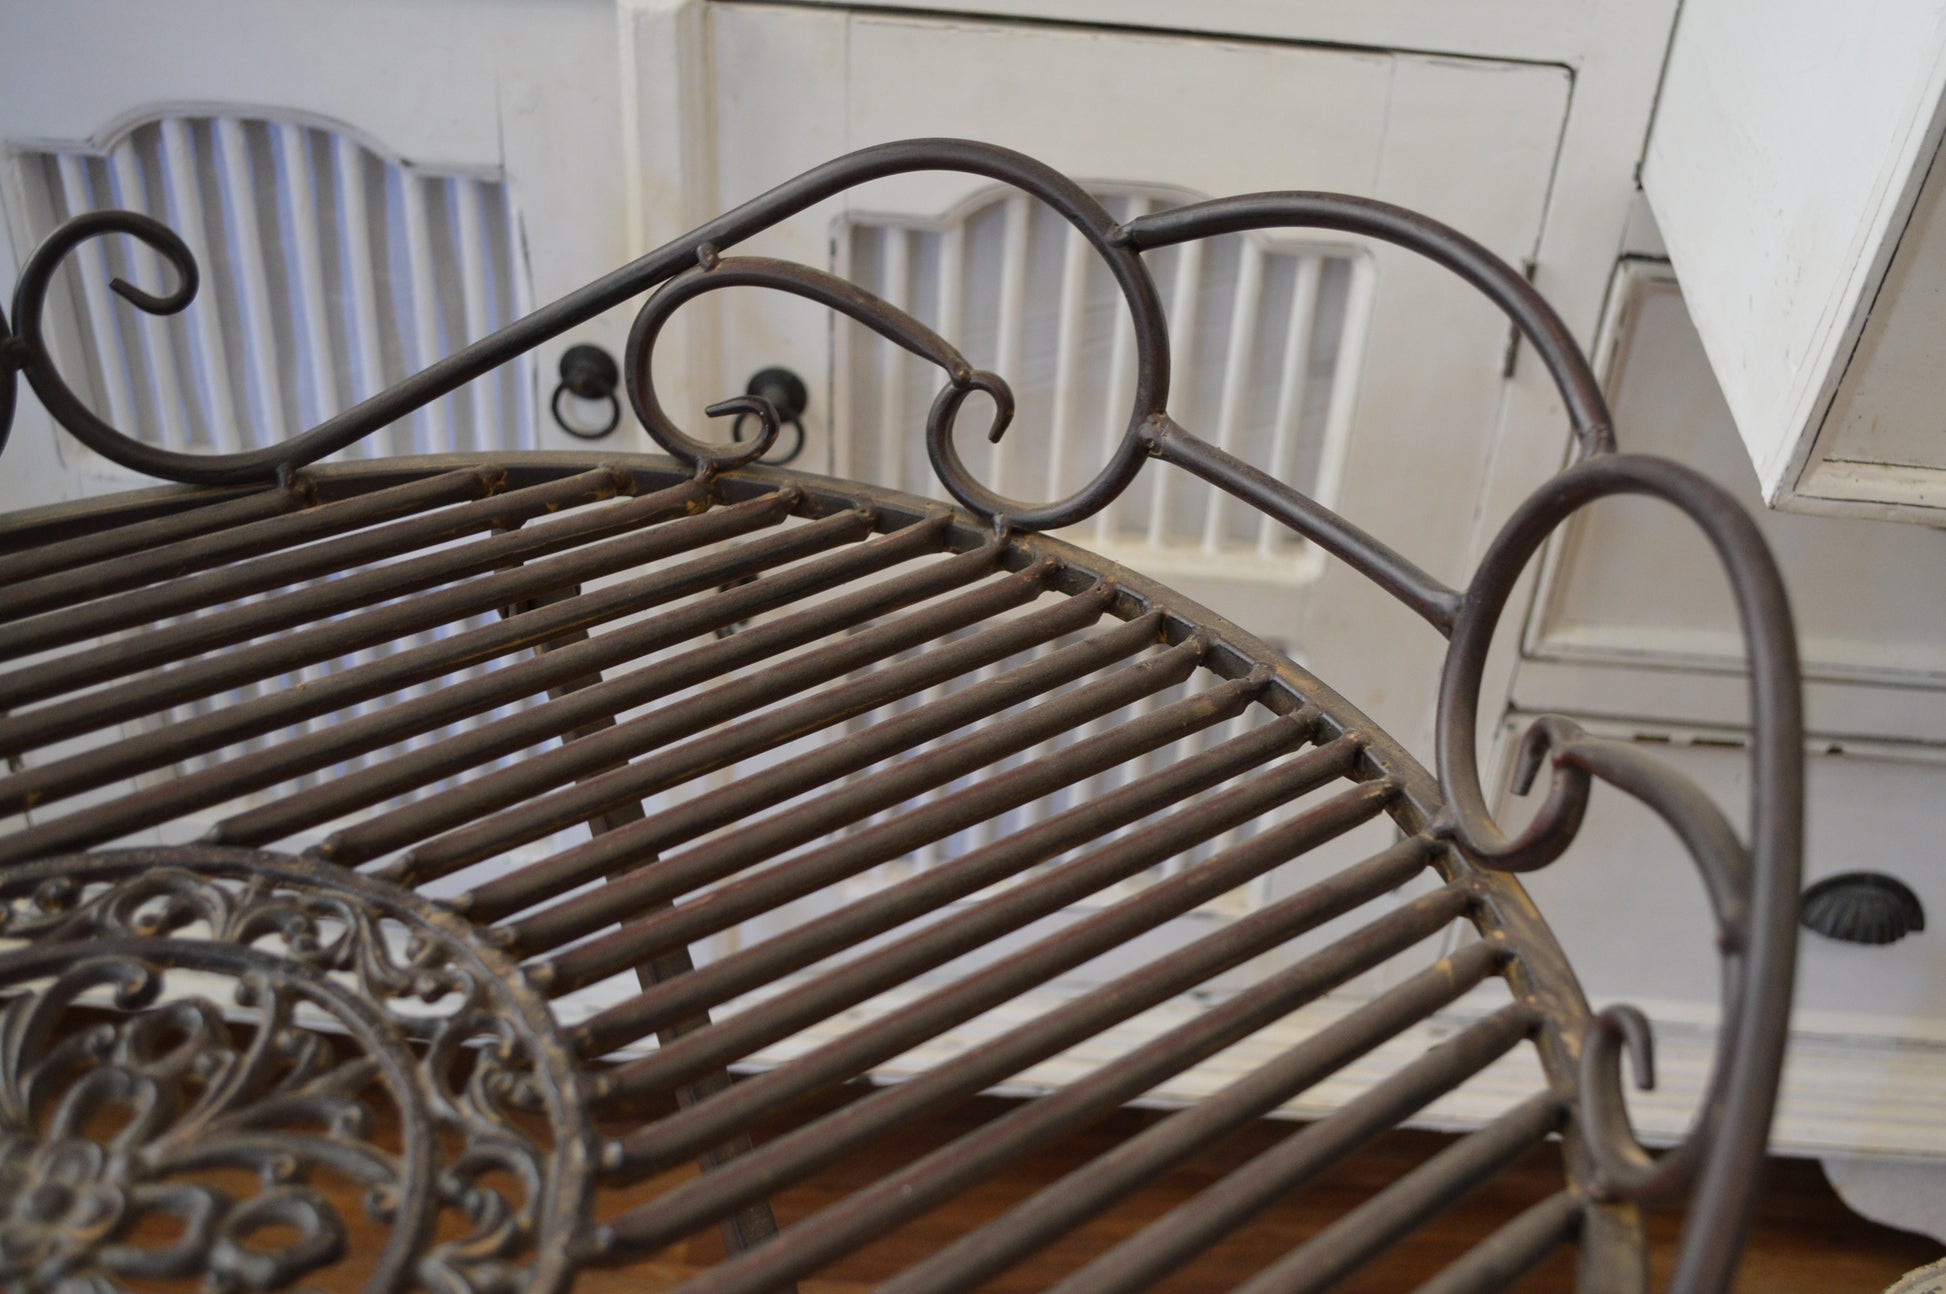 Romantisk bord i metall. Passar utmärkt i trädgården, orangeriet eller balkongen.  Material: Järn  OBS: hopfällbar  Mått: 49x63 cm, H 70cm